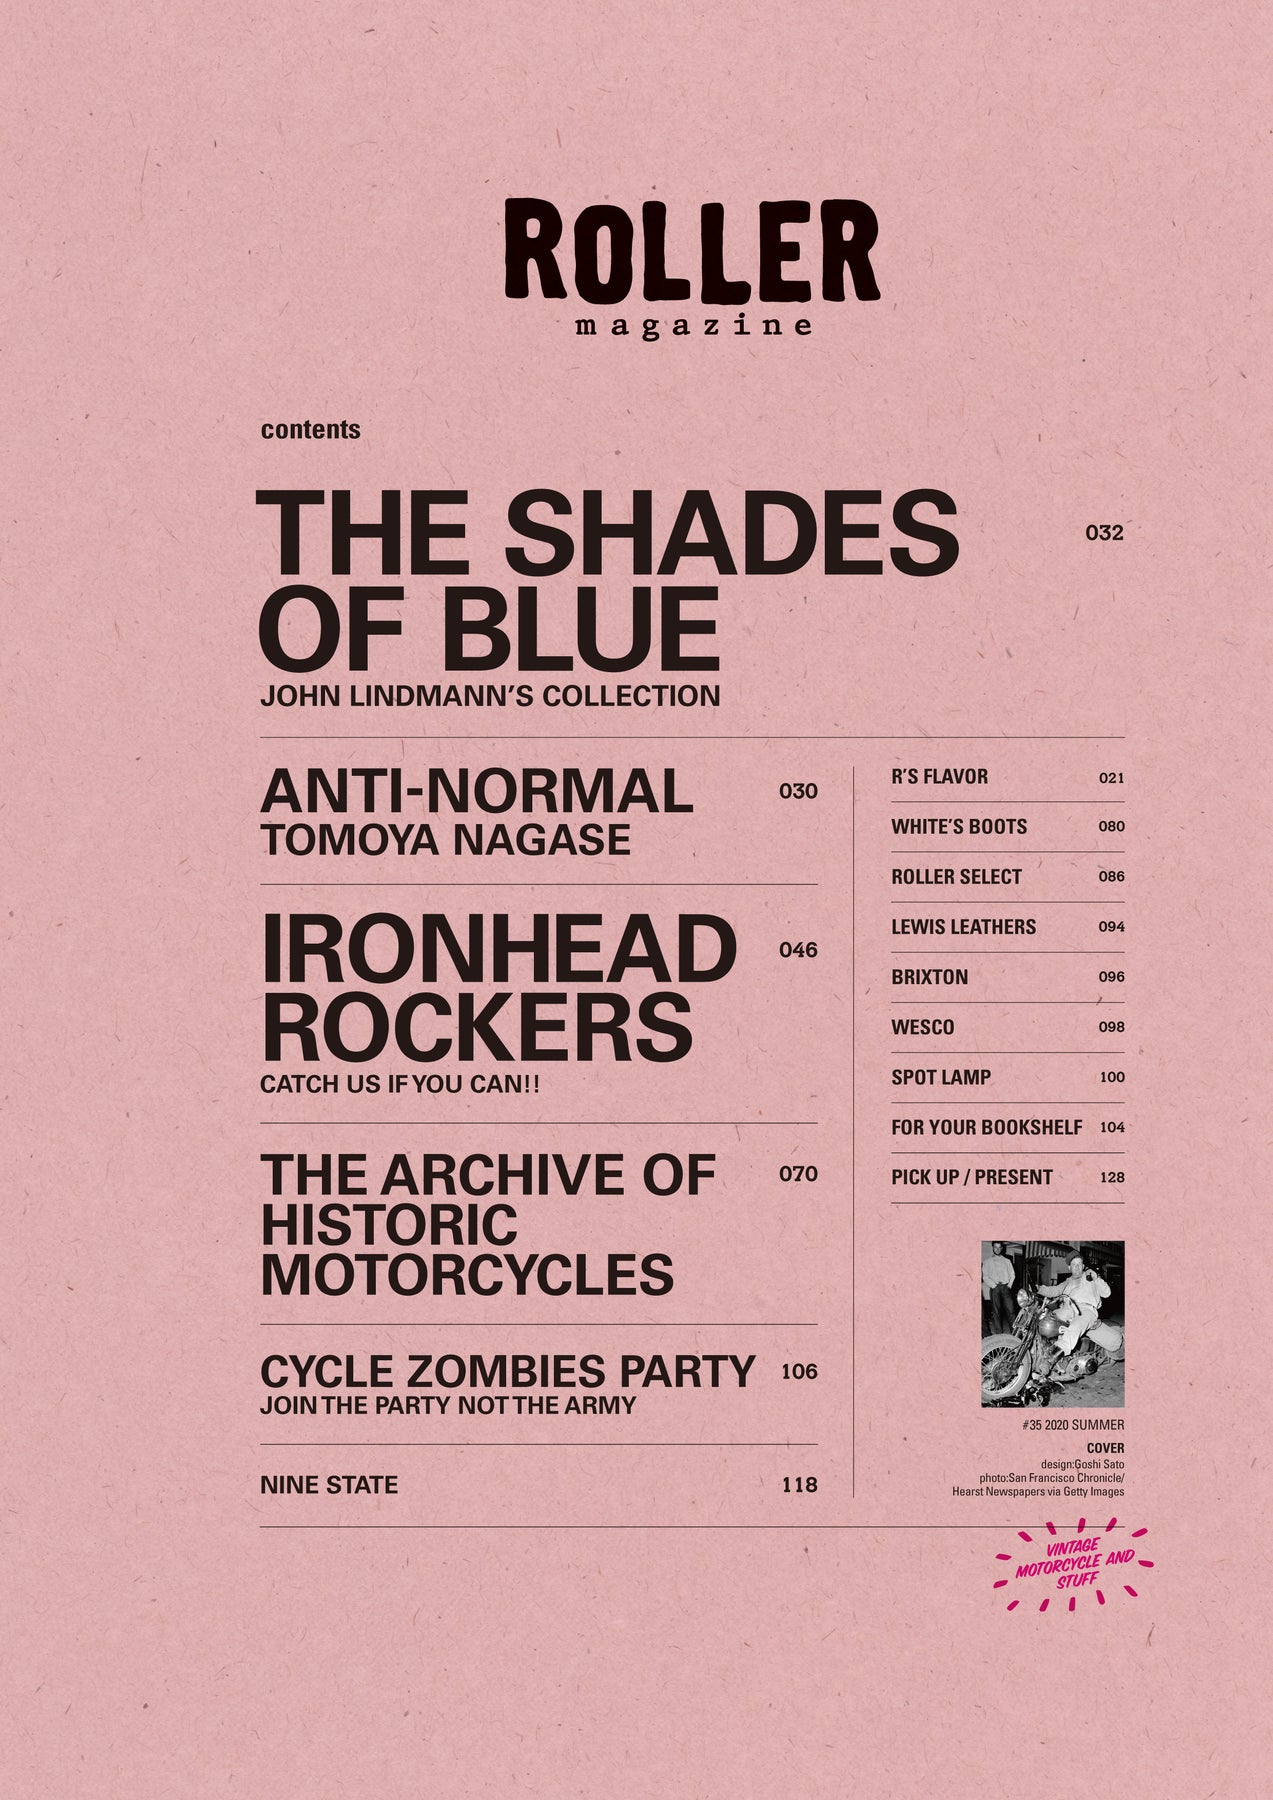 ROLLER Magazine Vol.35 – ROLLER magazine